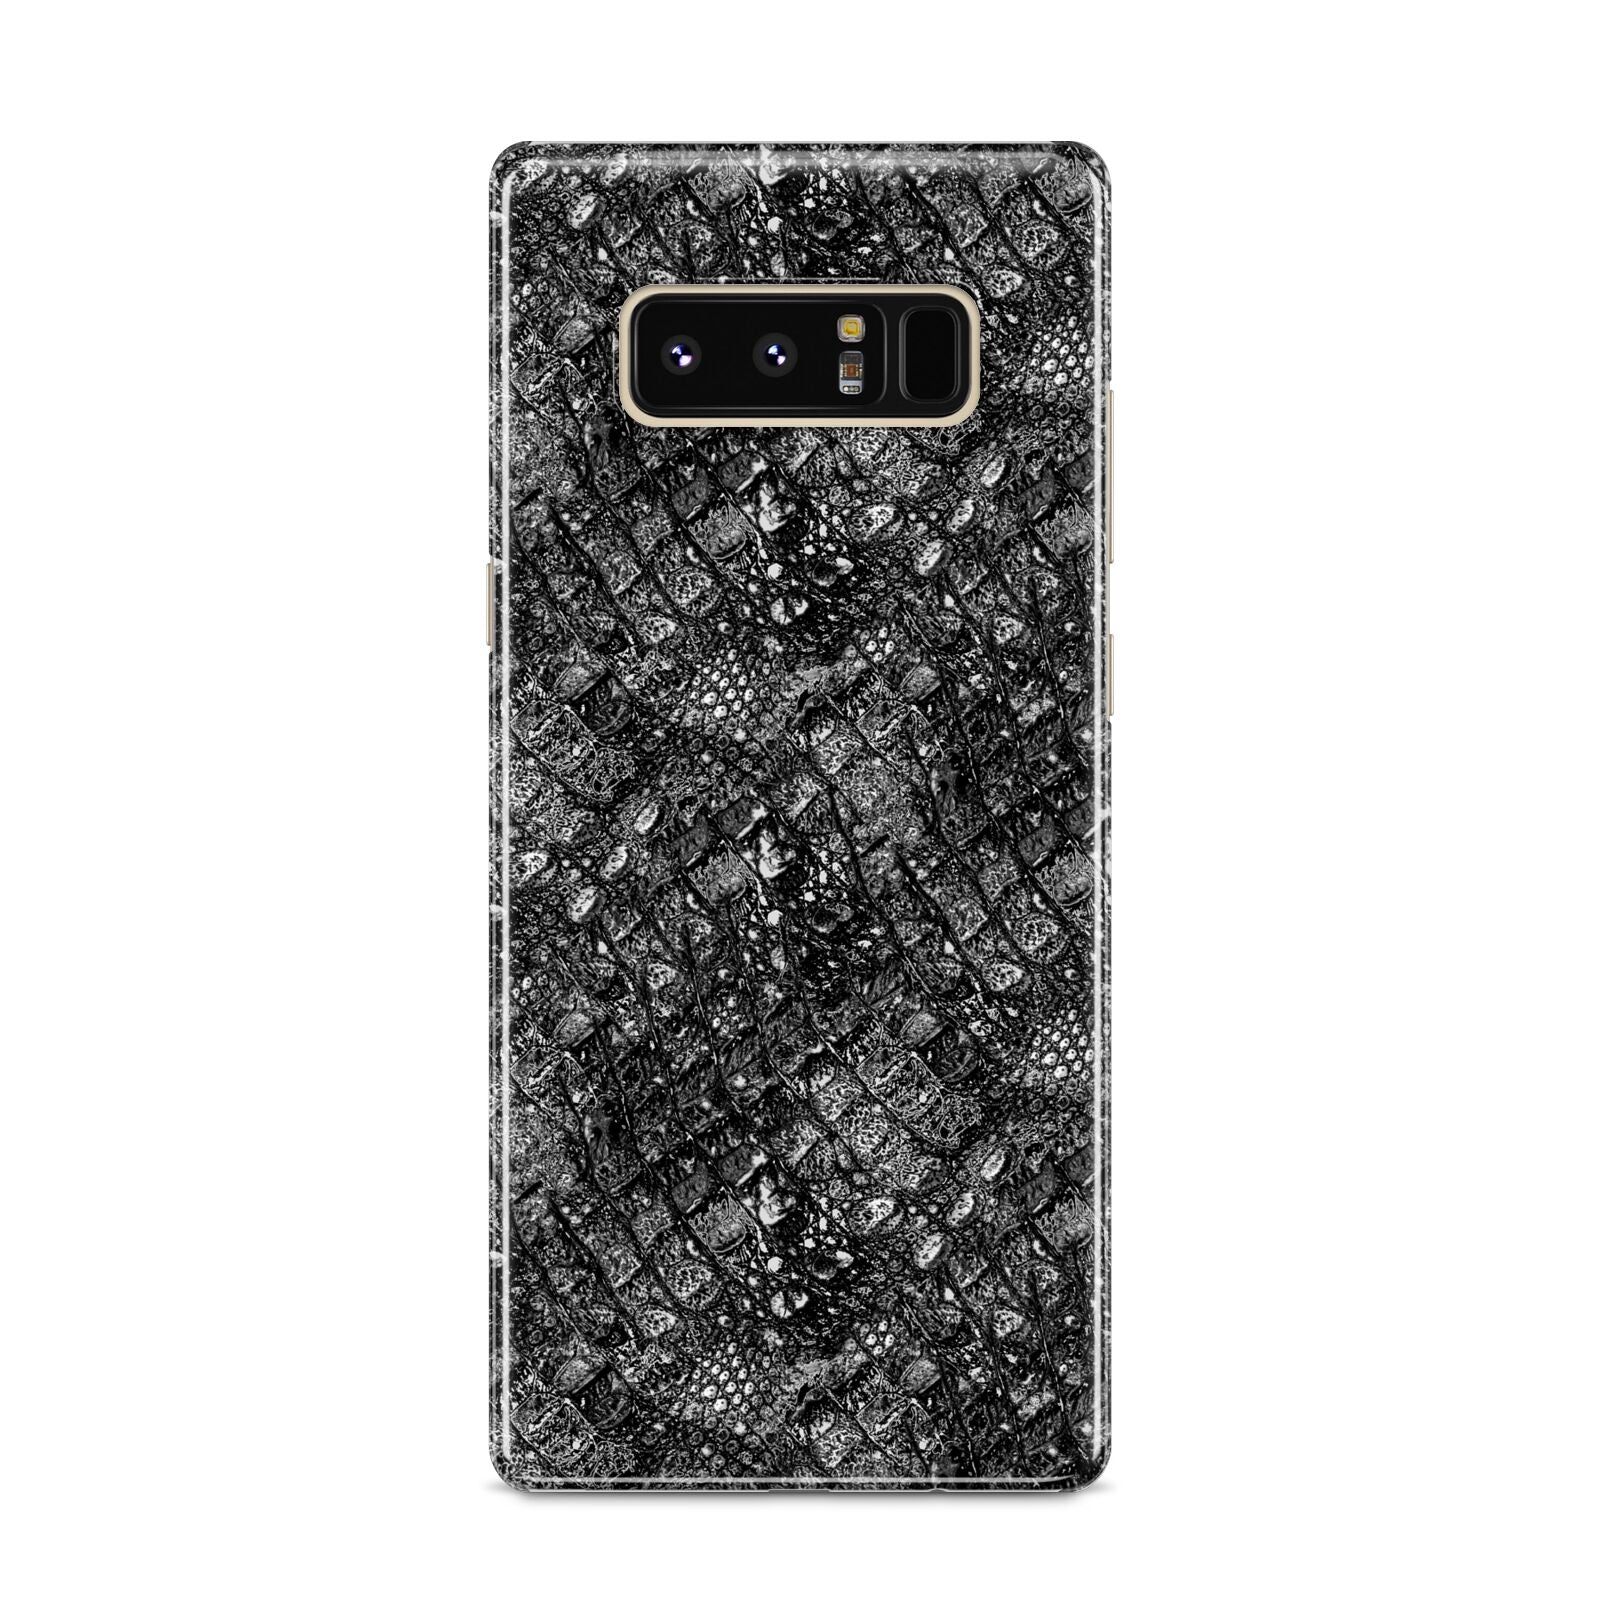 Snakeskin Design Samsung Galaxy S8 Case